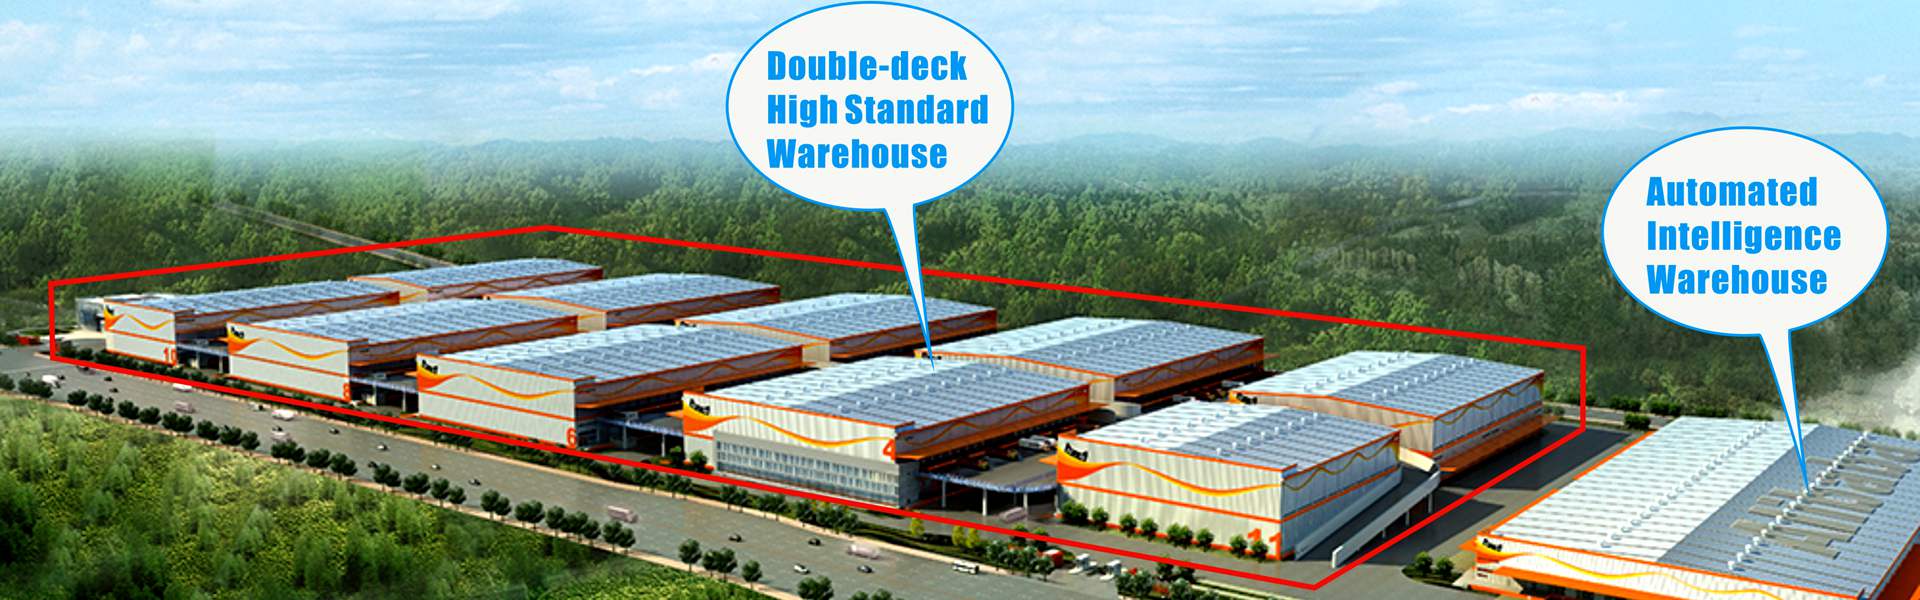 阿里巴巴集團兩層高標準鋼結構倉庫和自動化智能倉庫- 8840平方米